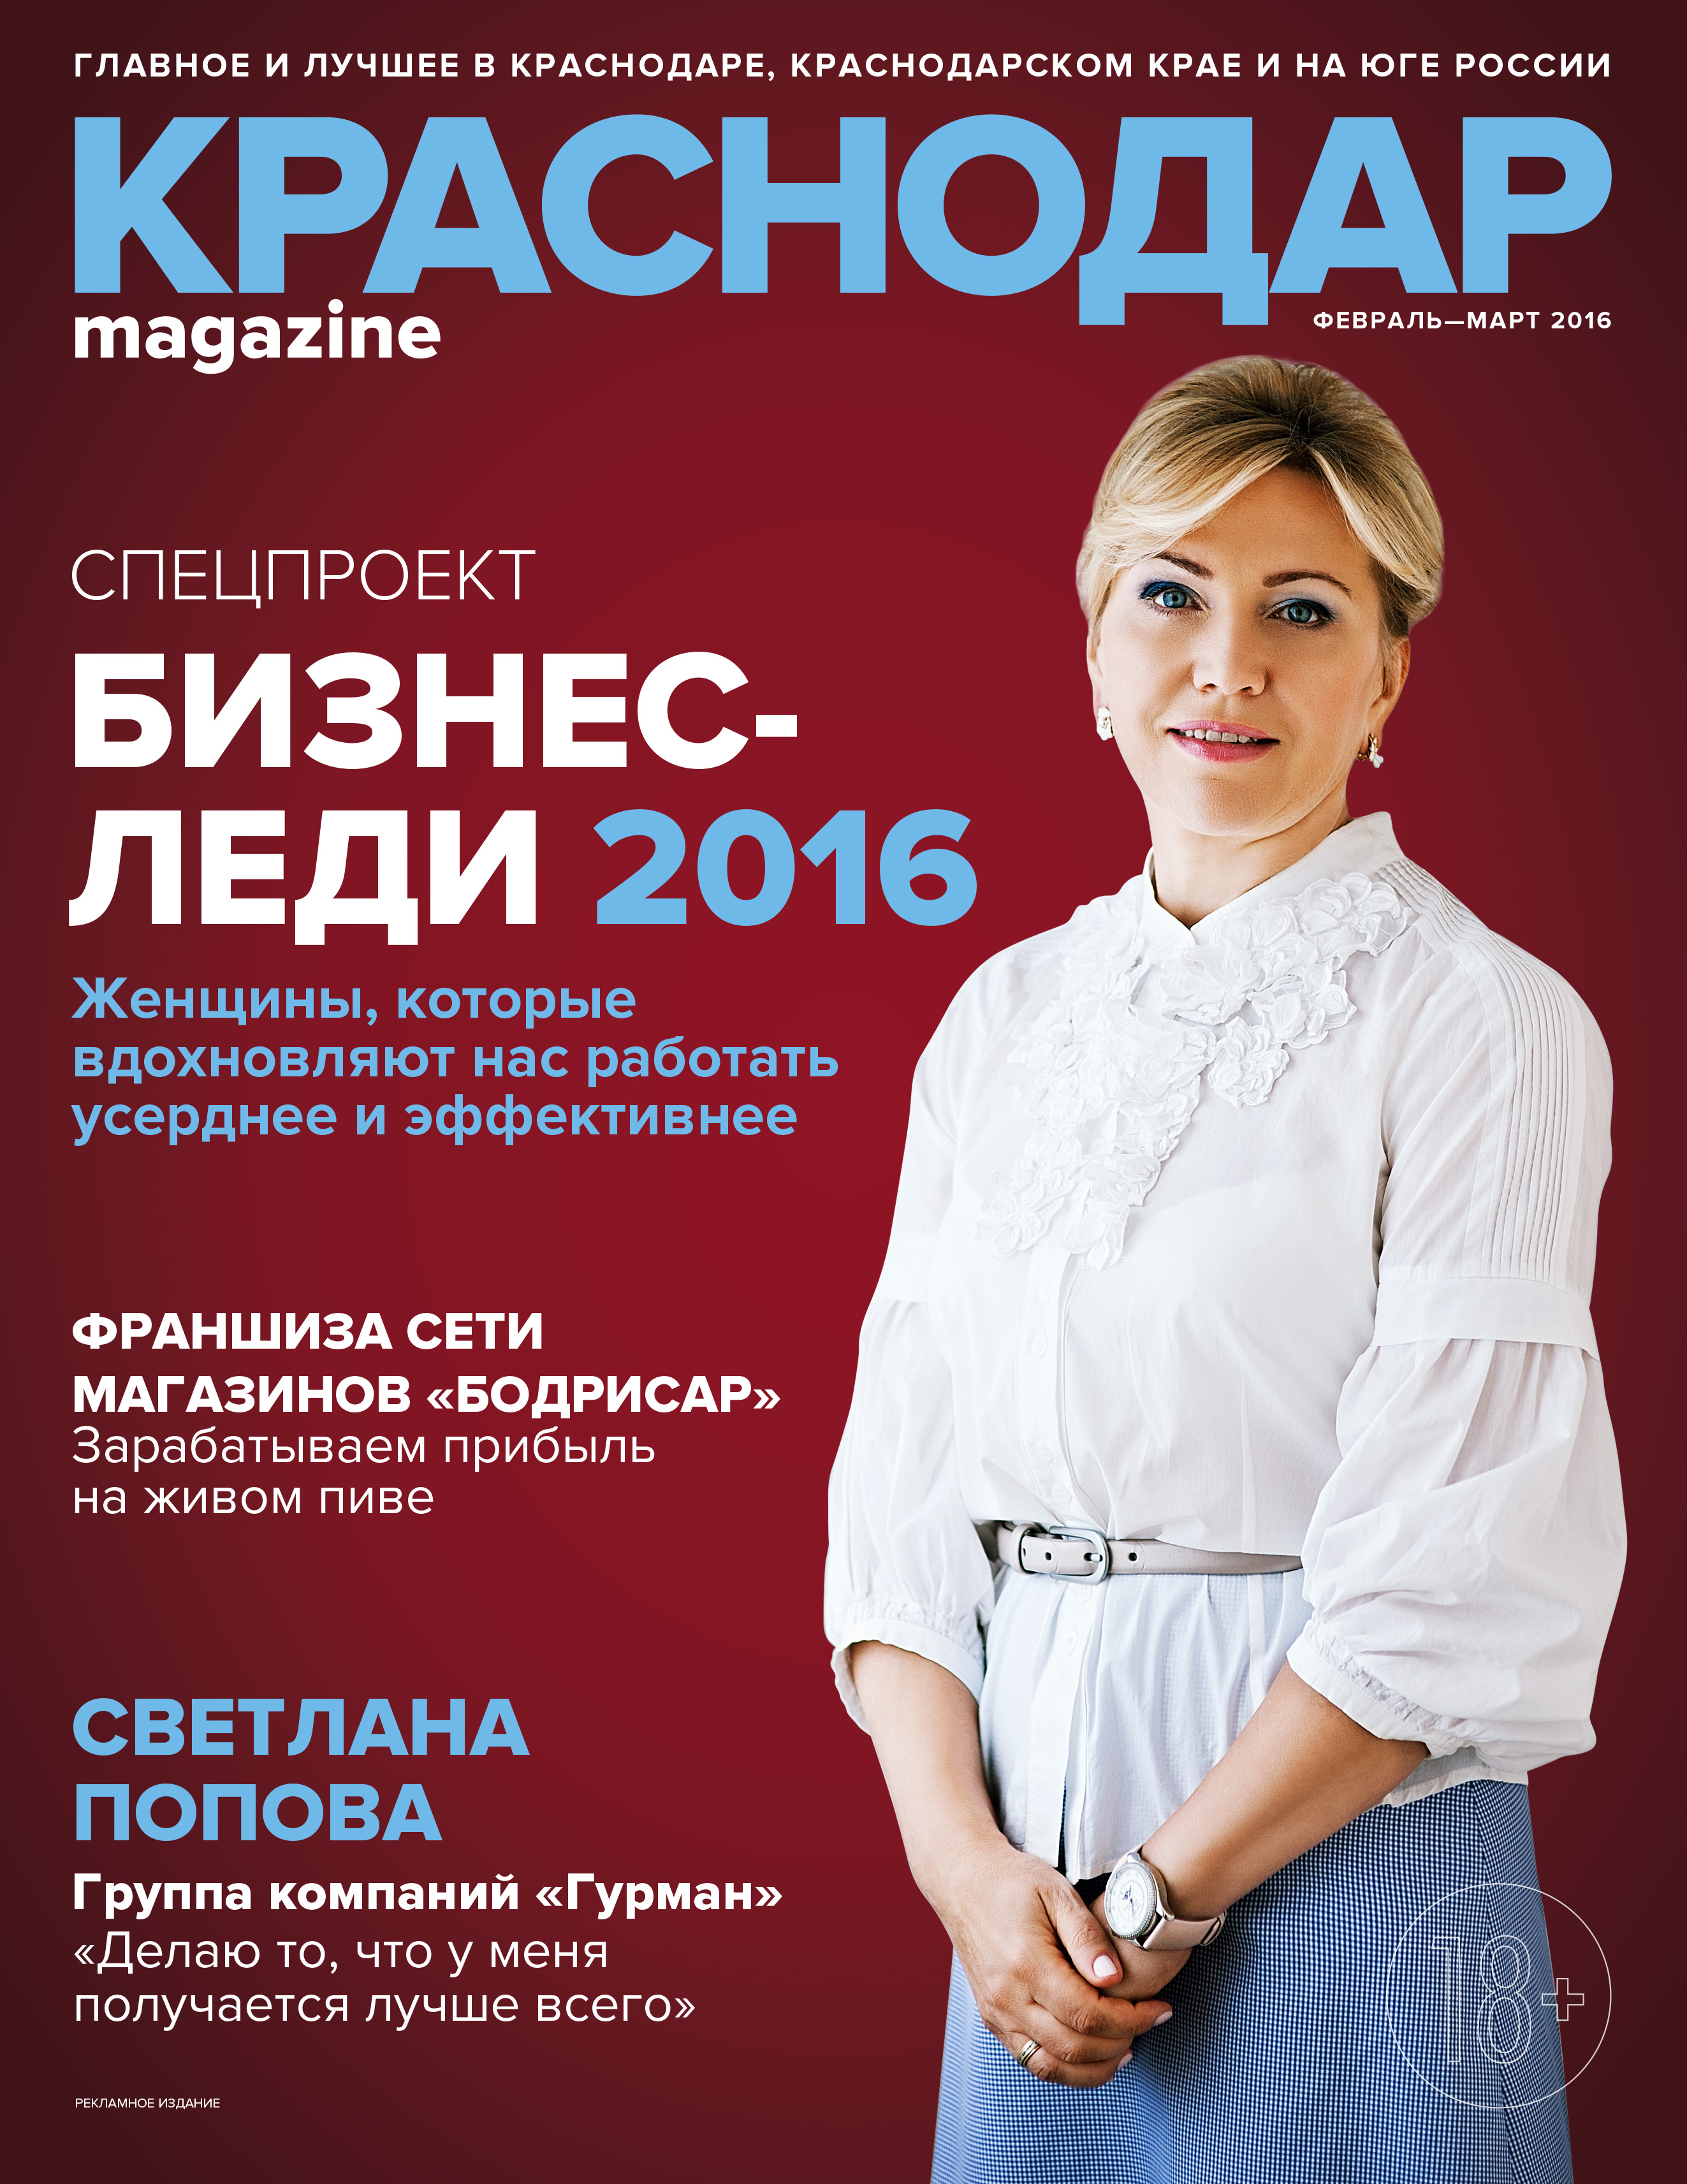 «БИЗНЕС-ЛЕДИ 2016»: Специальный ежегодный проект краевого журнала «Краснодар Magazine»